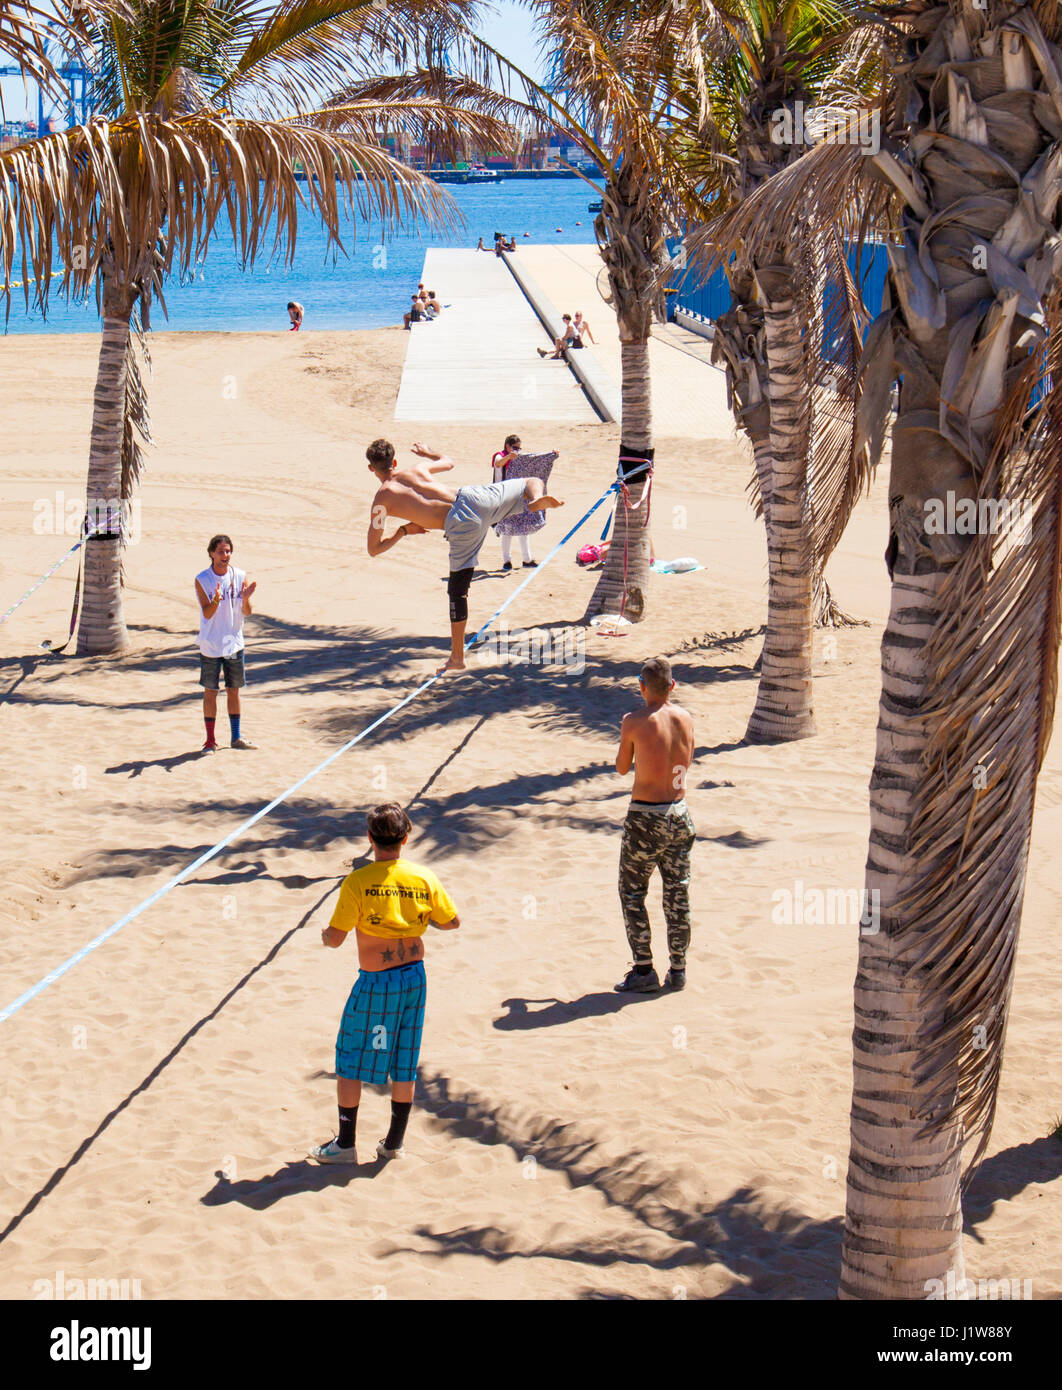 LAS PALMAS - April 15: A group of young men practicing slacklining on Playa de Las Alcaravaneras beach, April 15, 2016 in Las Palmas, Gran Canaria, Sp Stock Photo